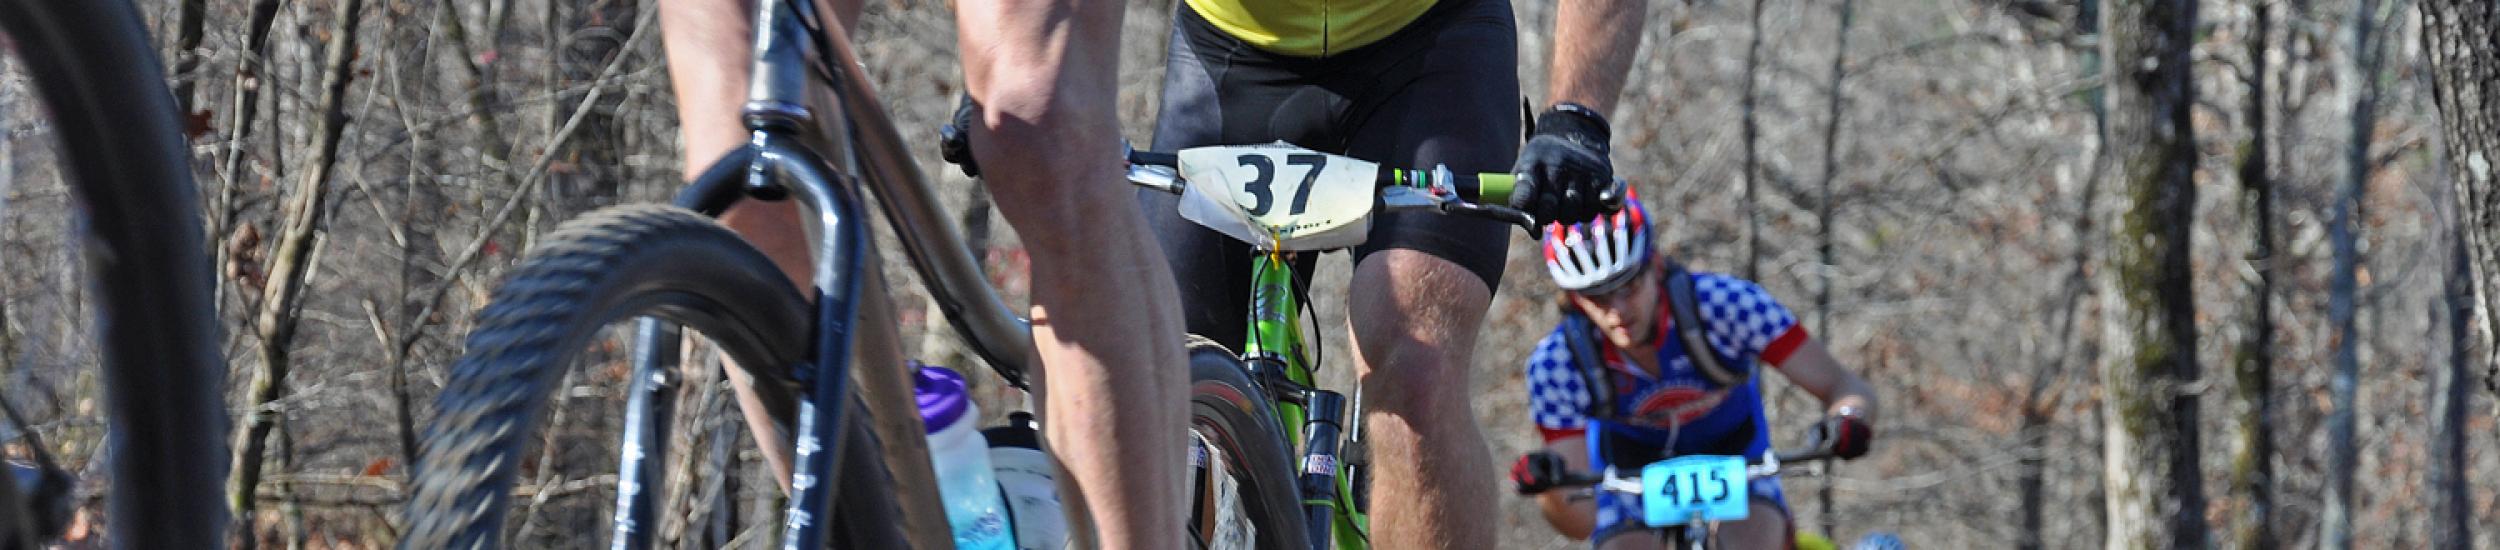 News: Ciclismo, arriva la gran fondo appennino in mountain bike